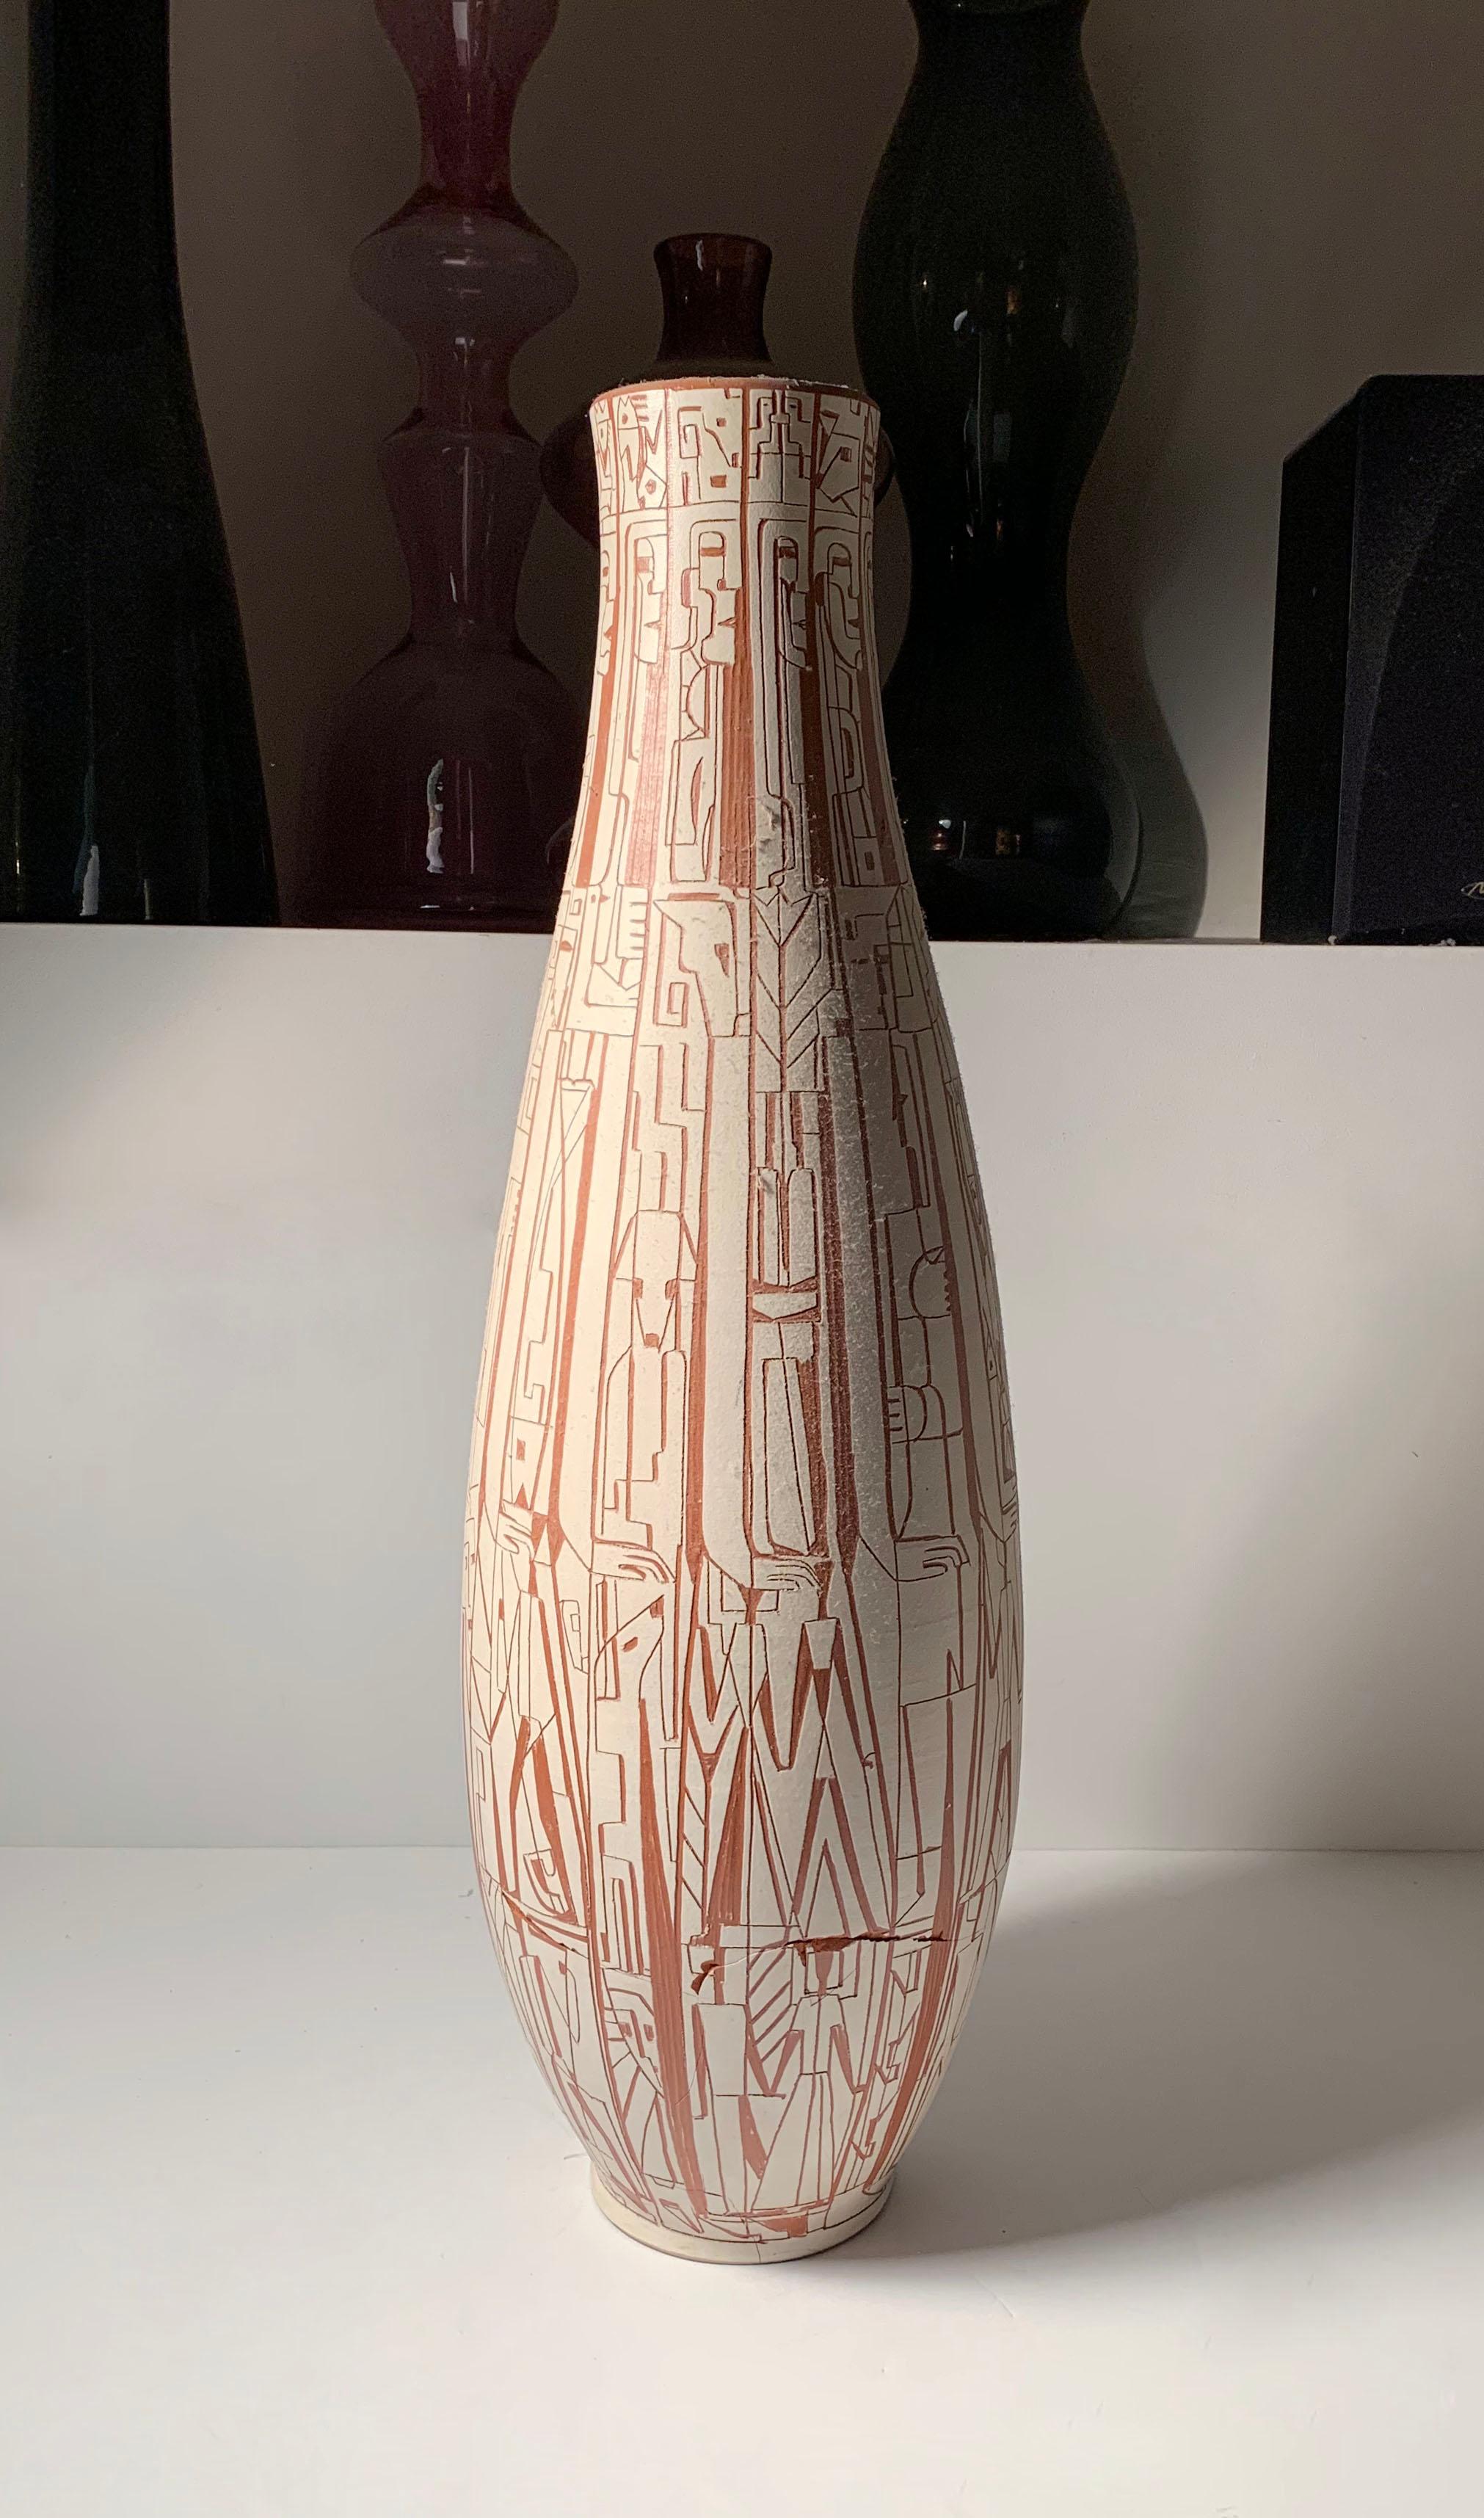 Vase cubiste monumental en poterie Brooklin de Theo & Susan Harlander.

Le vase est très endommagé et doit être restauré. Une œuvre aussi monumentale et significative de ce couple qui mérite d'être restaurée. La ligne des cheveux avec quelques